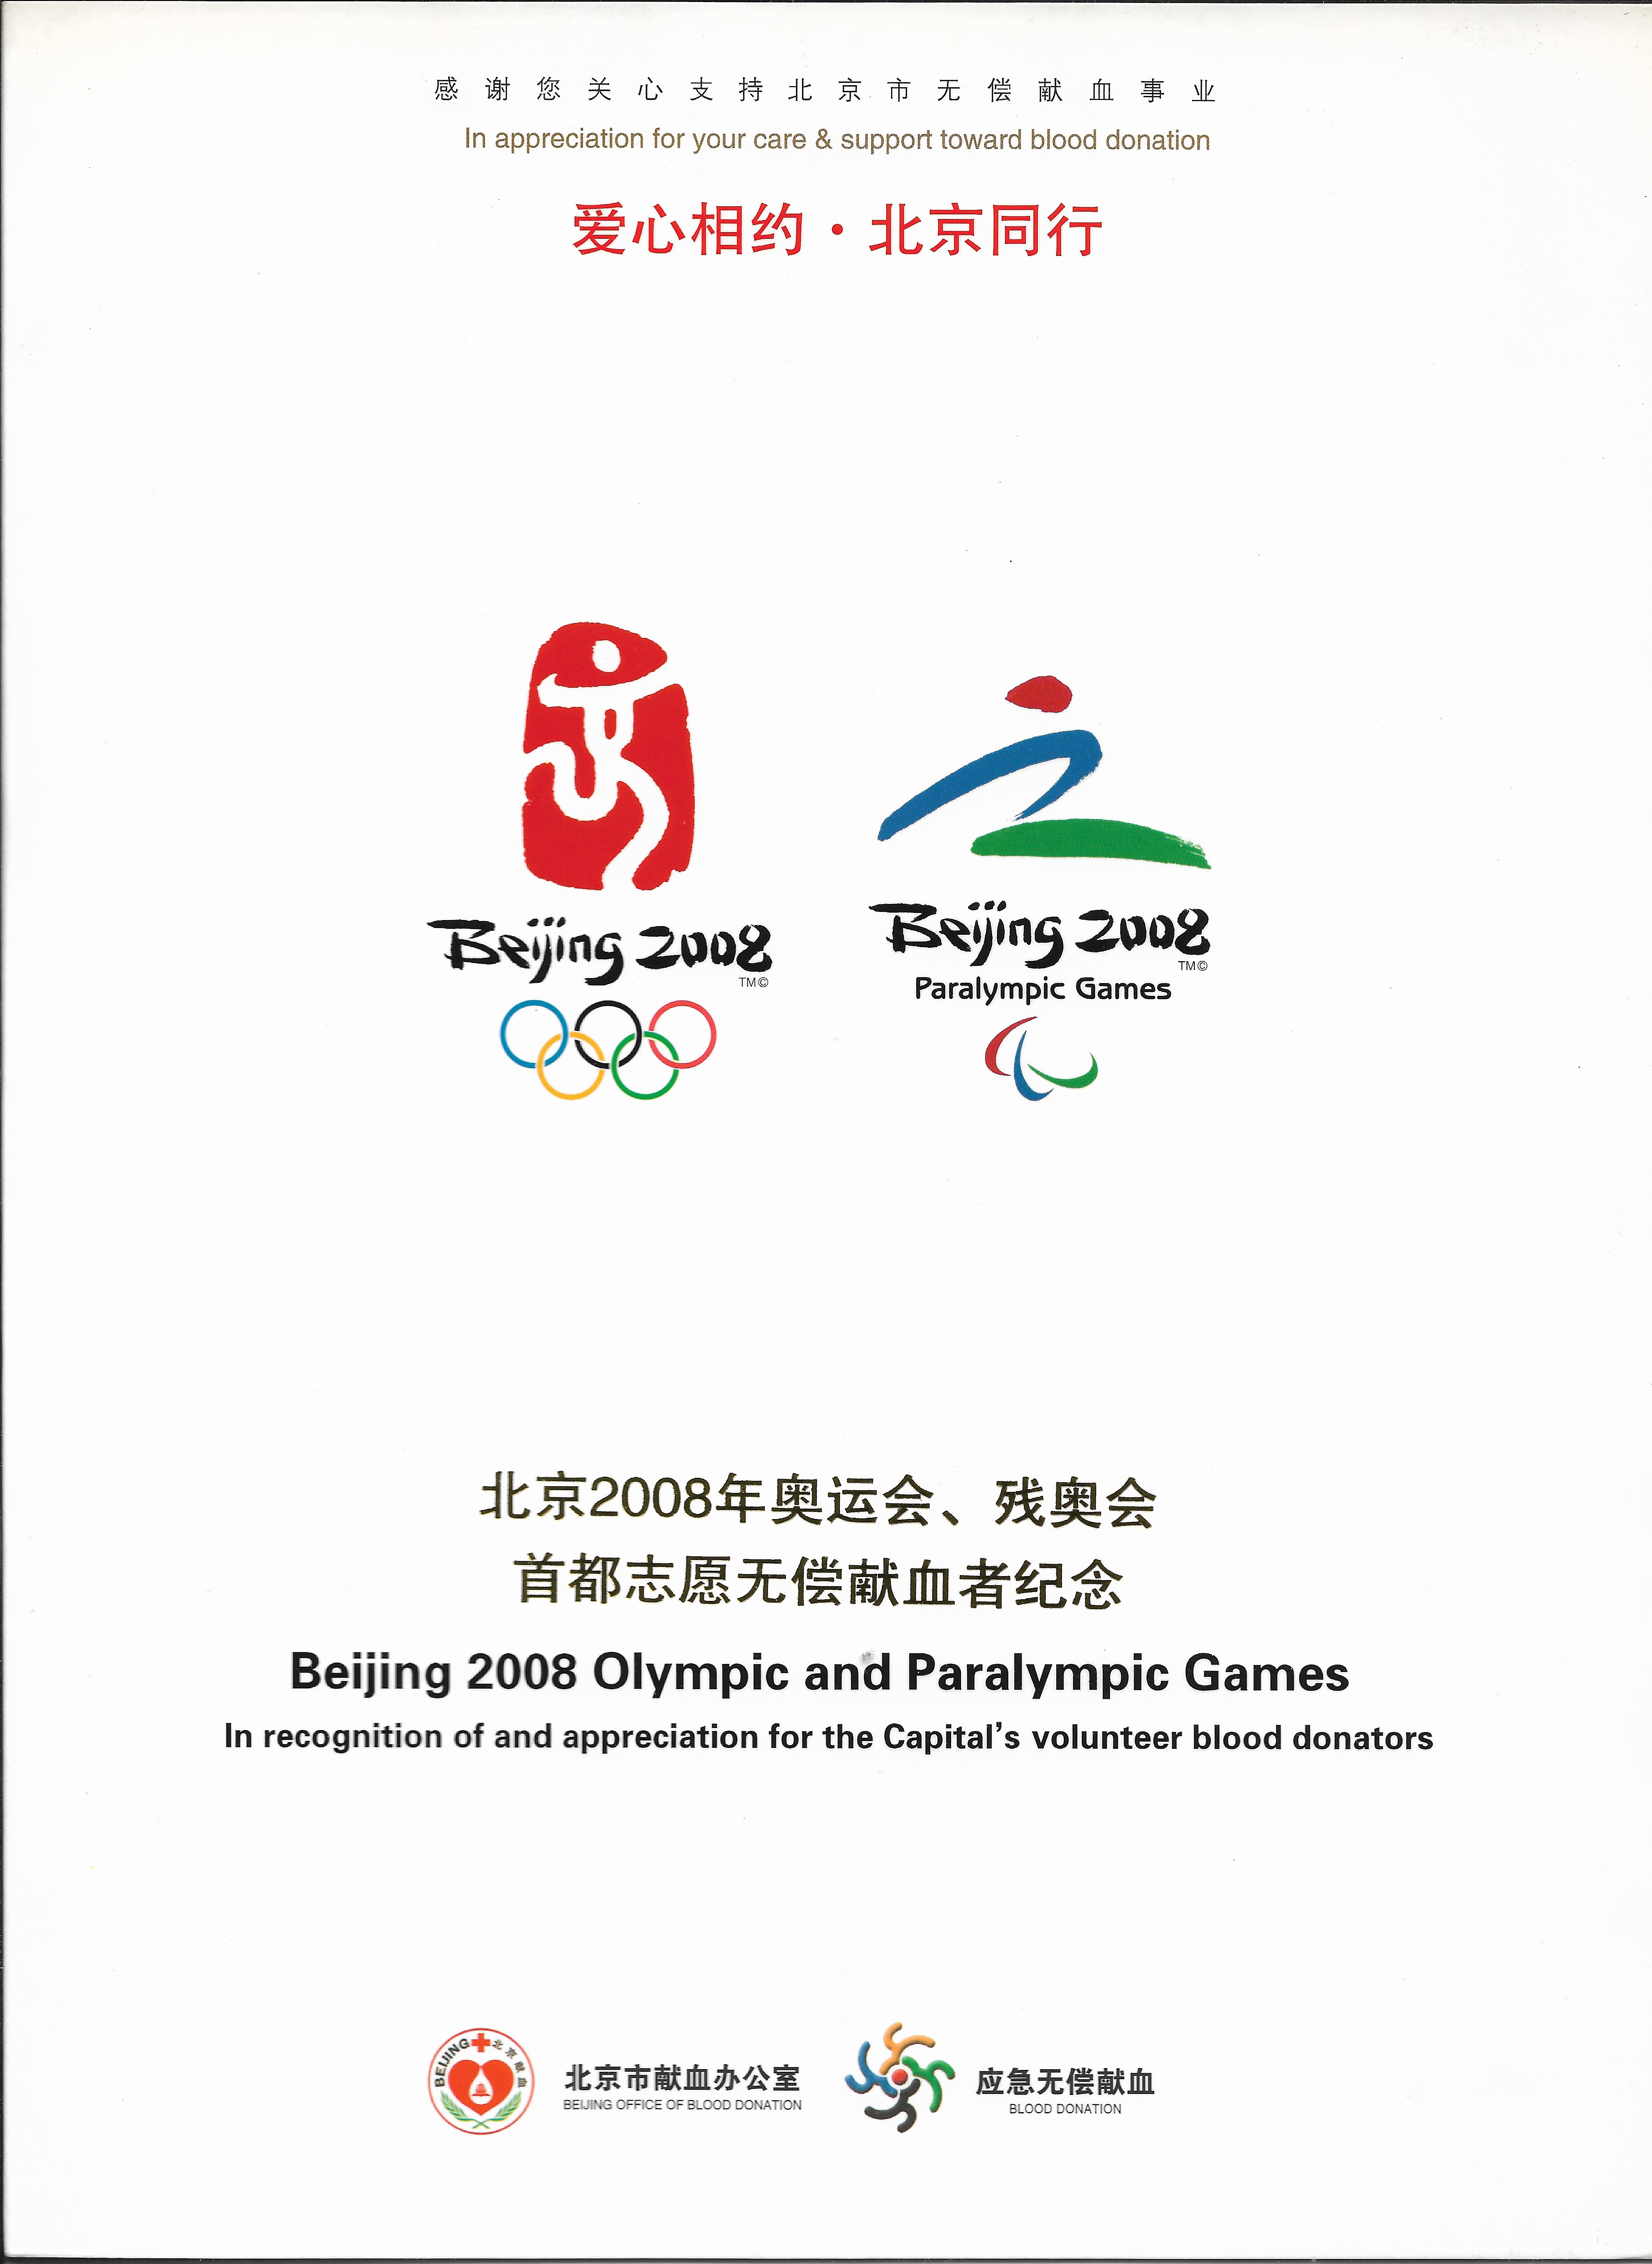 北京2008奥运会会徽图片